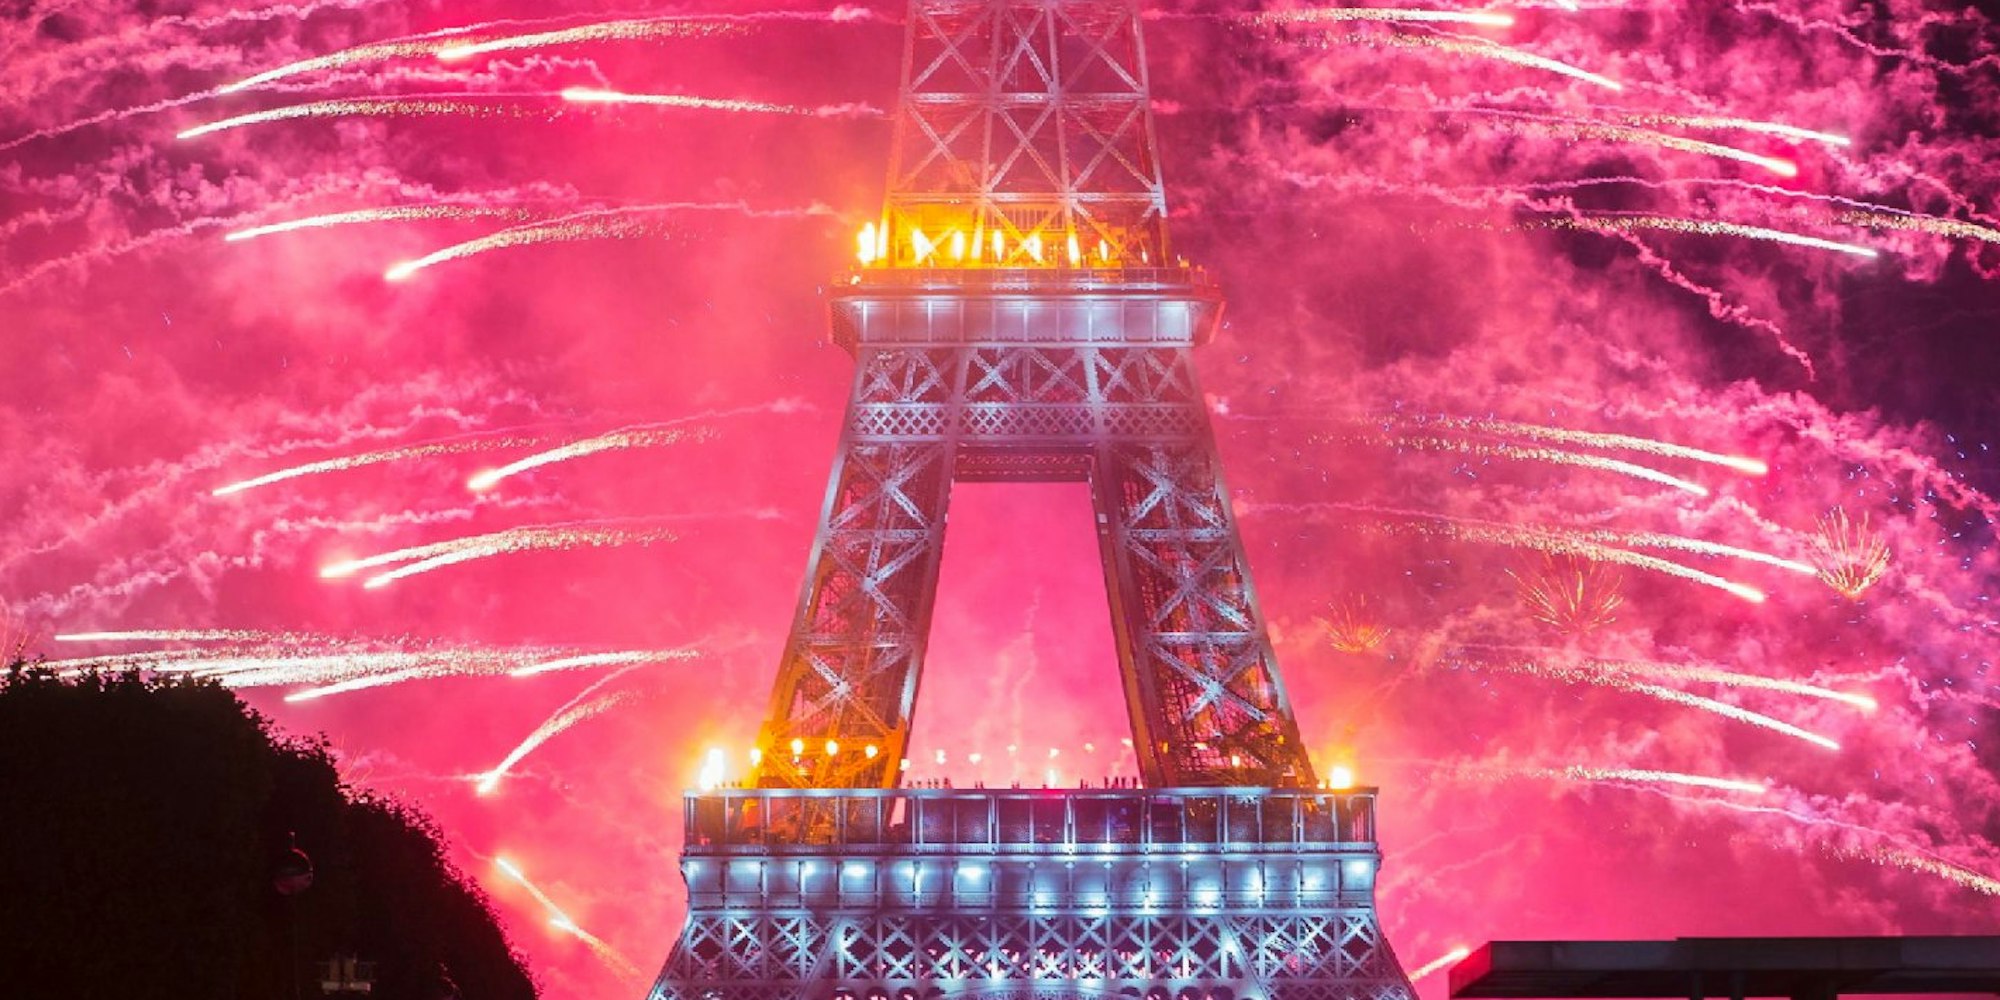 Nachtfotos vom Eiffelturm können teuer werden: In manchen Fällen verlangen Urheber für die Verbreitung von Fotos öffentlicher Bauwerke Geld.